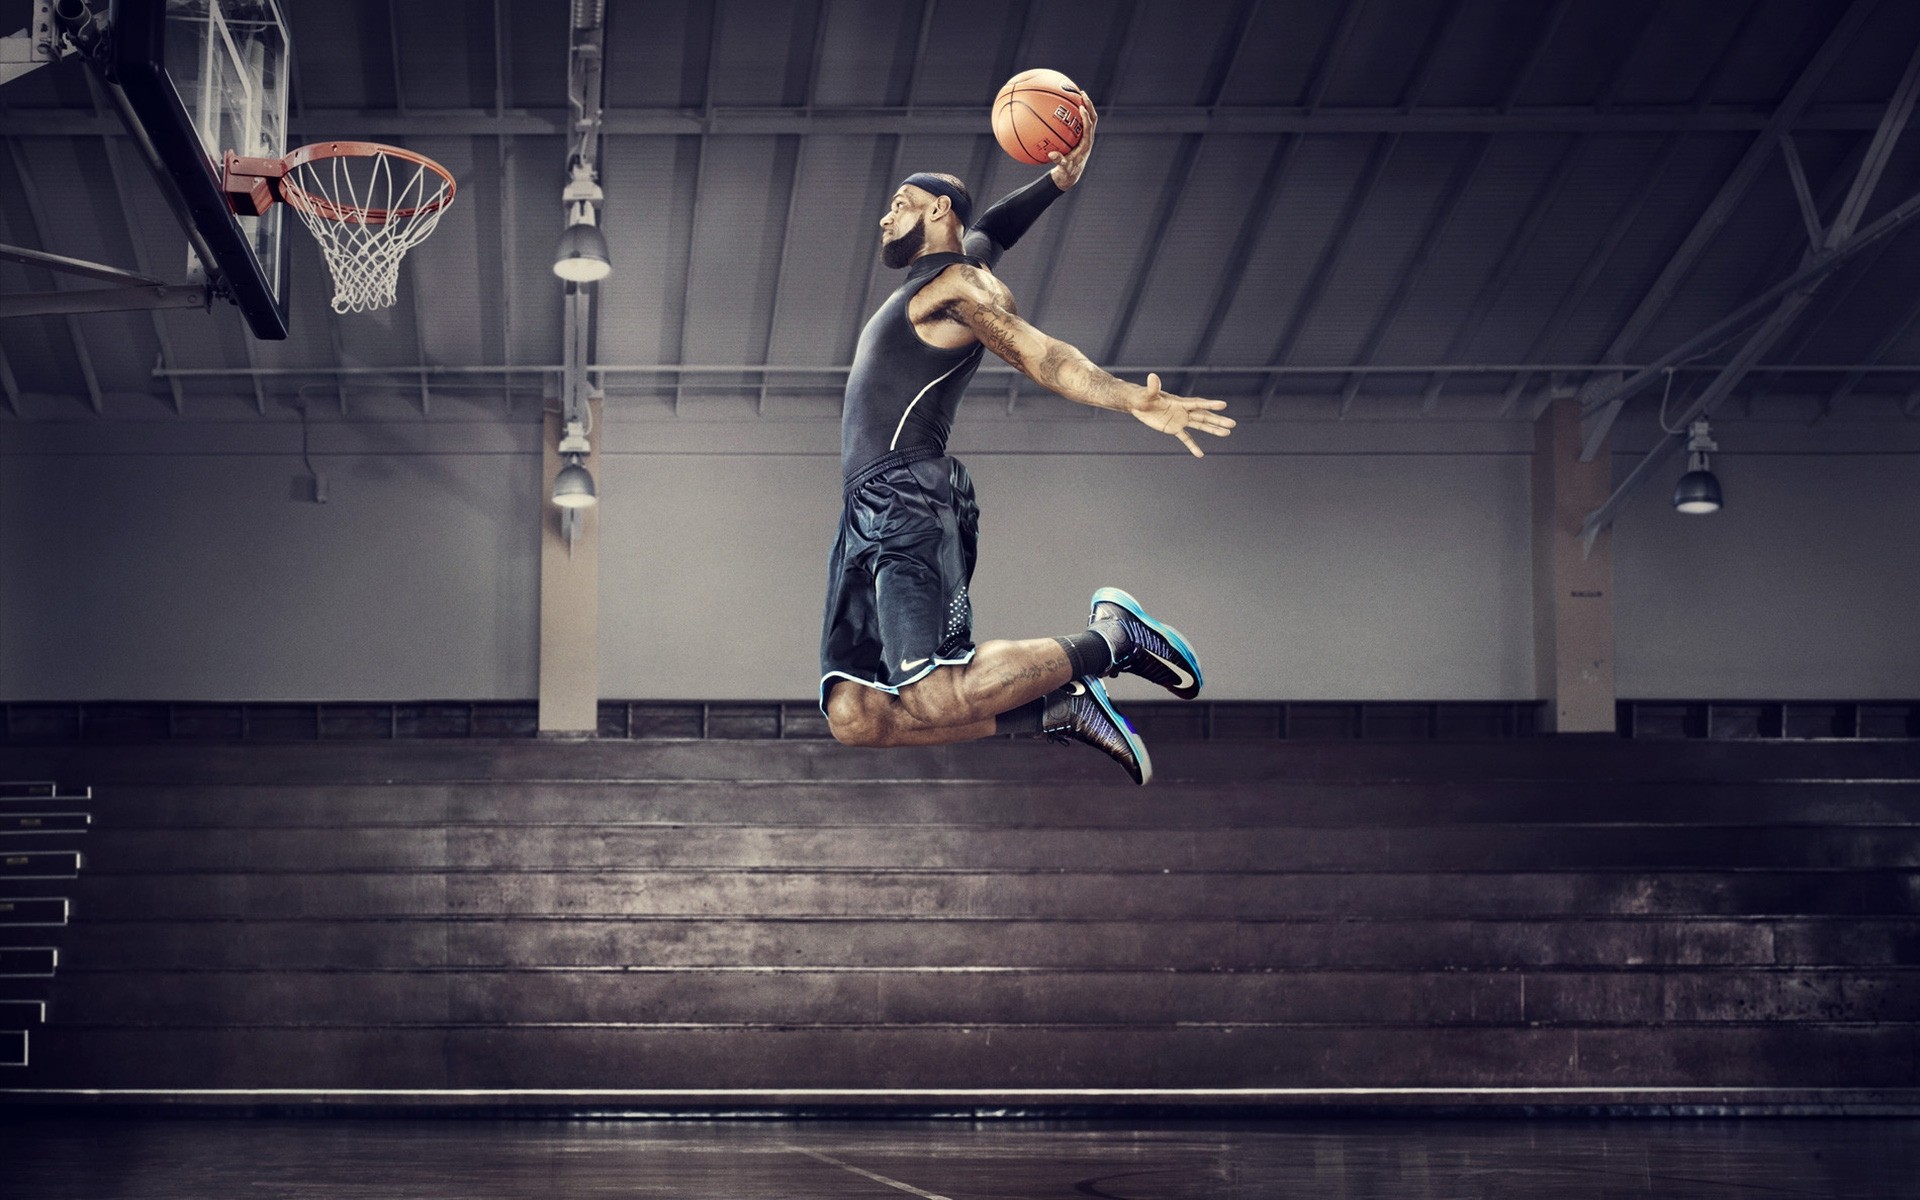 баскетбол движения конкурс прыгать спортсмен в помещении действие один аджилити мяч человек умение энергии упражнения взрослый игры баланс балет